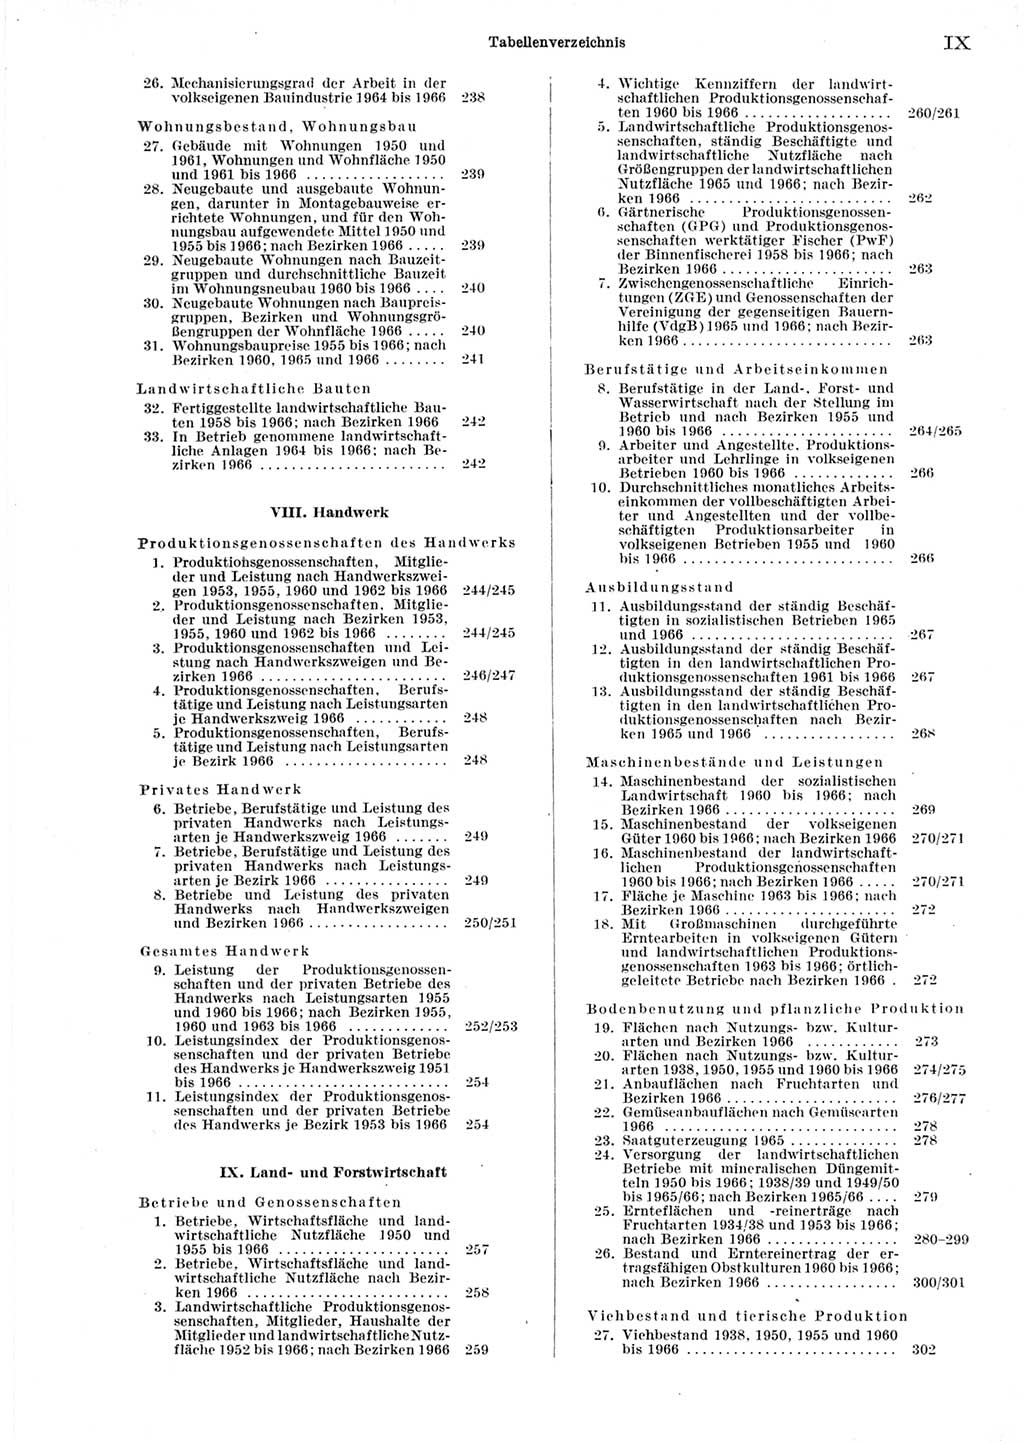 Statistisches Jahrbuch der Deutschen Demokratischen Republik (DDR) 1967, Seite 9 (Stat. Jb. DDR 1967, S. 9)